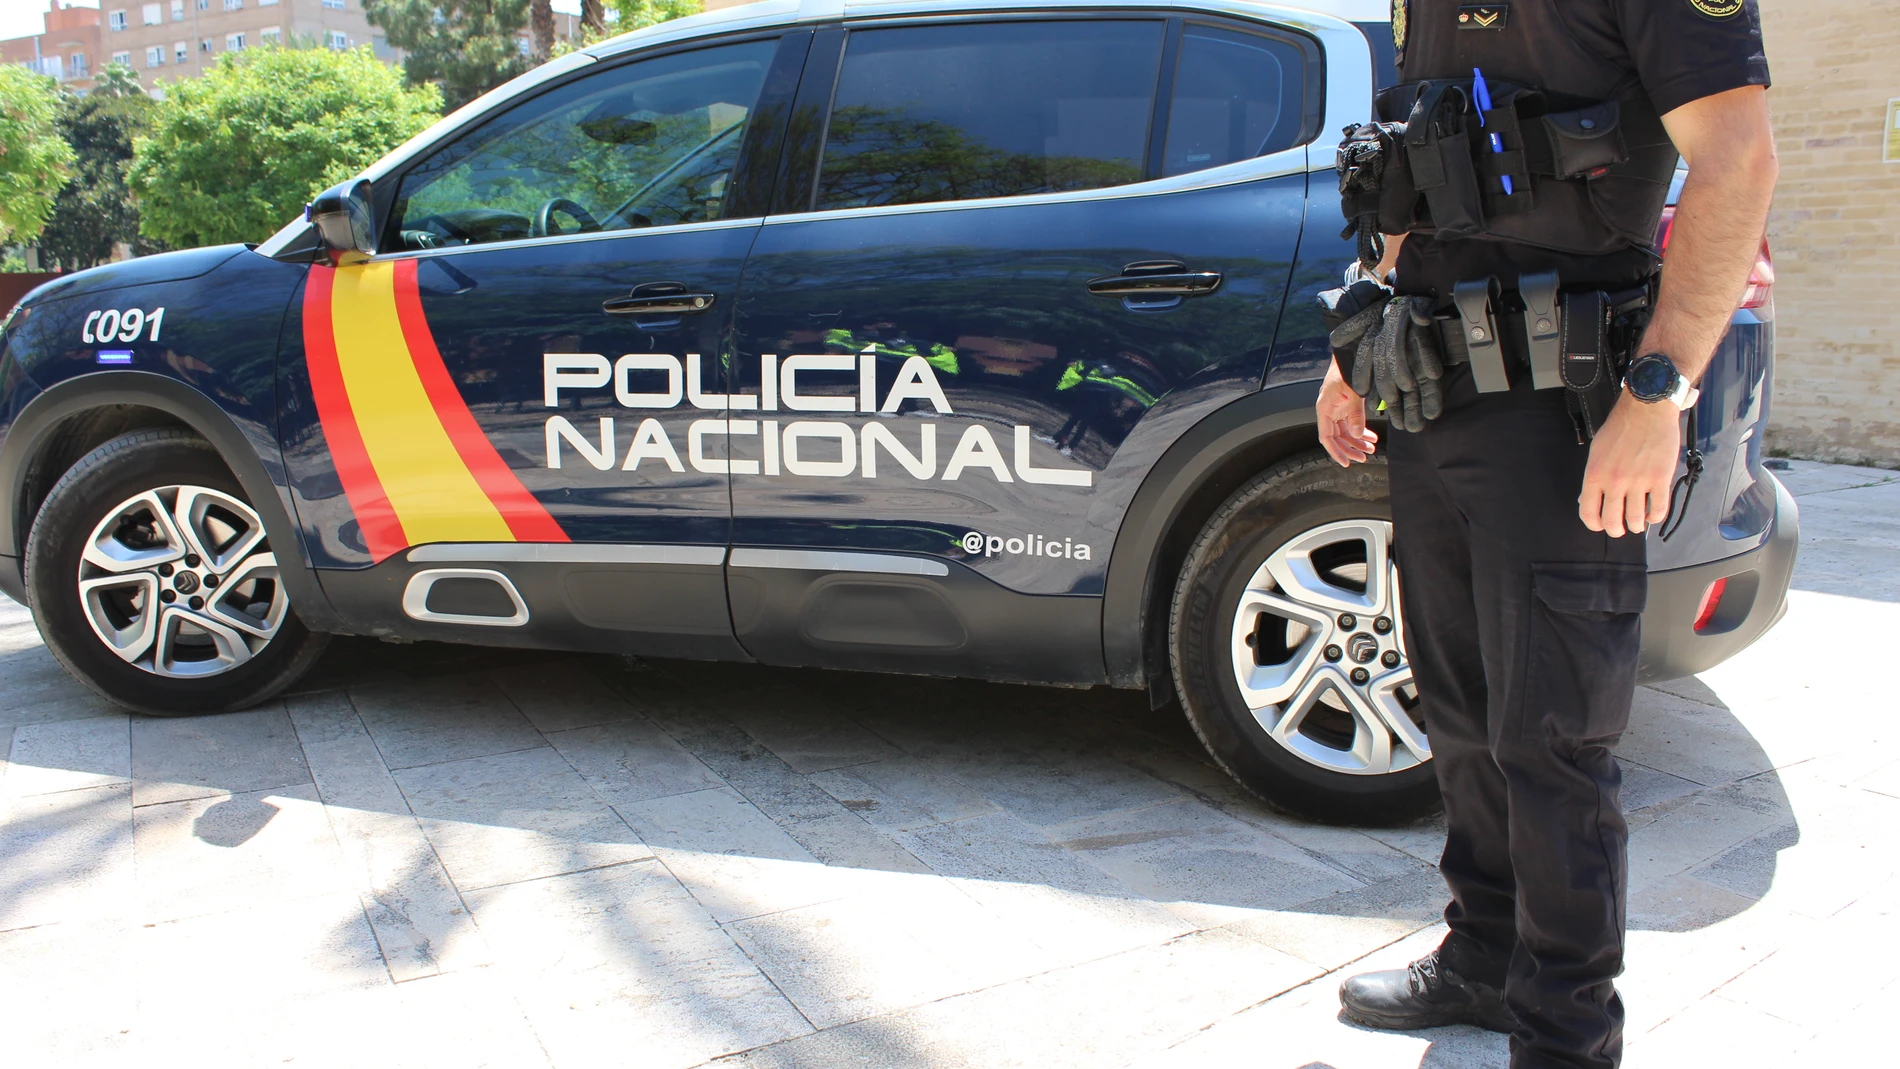 Los hechos ocurrieron este sábado, sobre las nueve y media de la mañana, cuando los policías fueron comisionados por la Sala del 091 para que acudiesen a una calle del distrito valenciano de Marítim